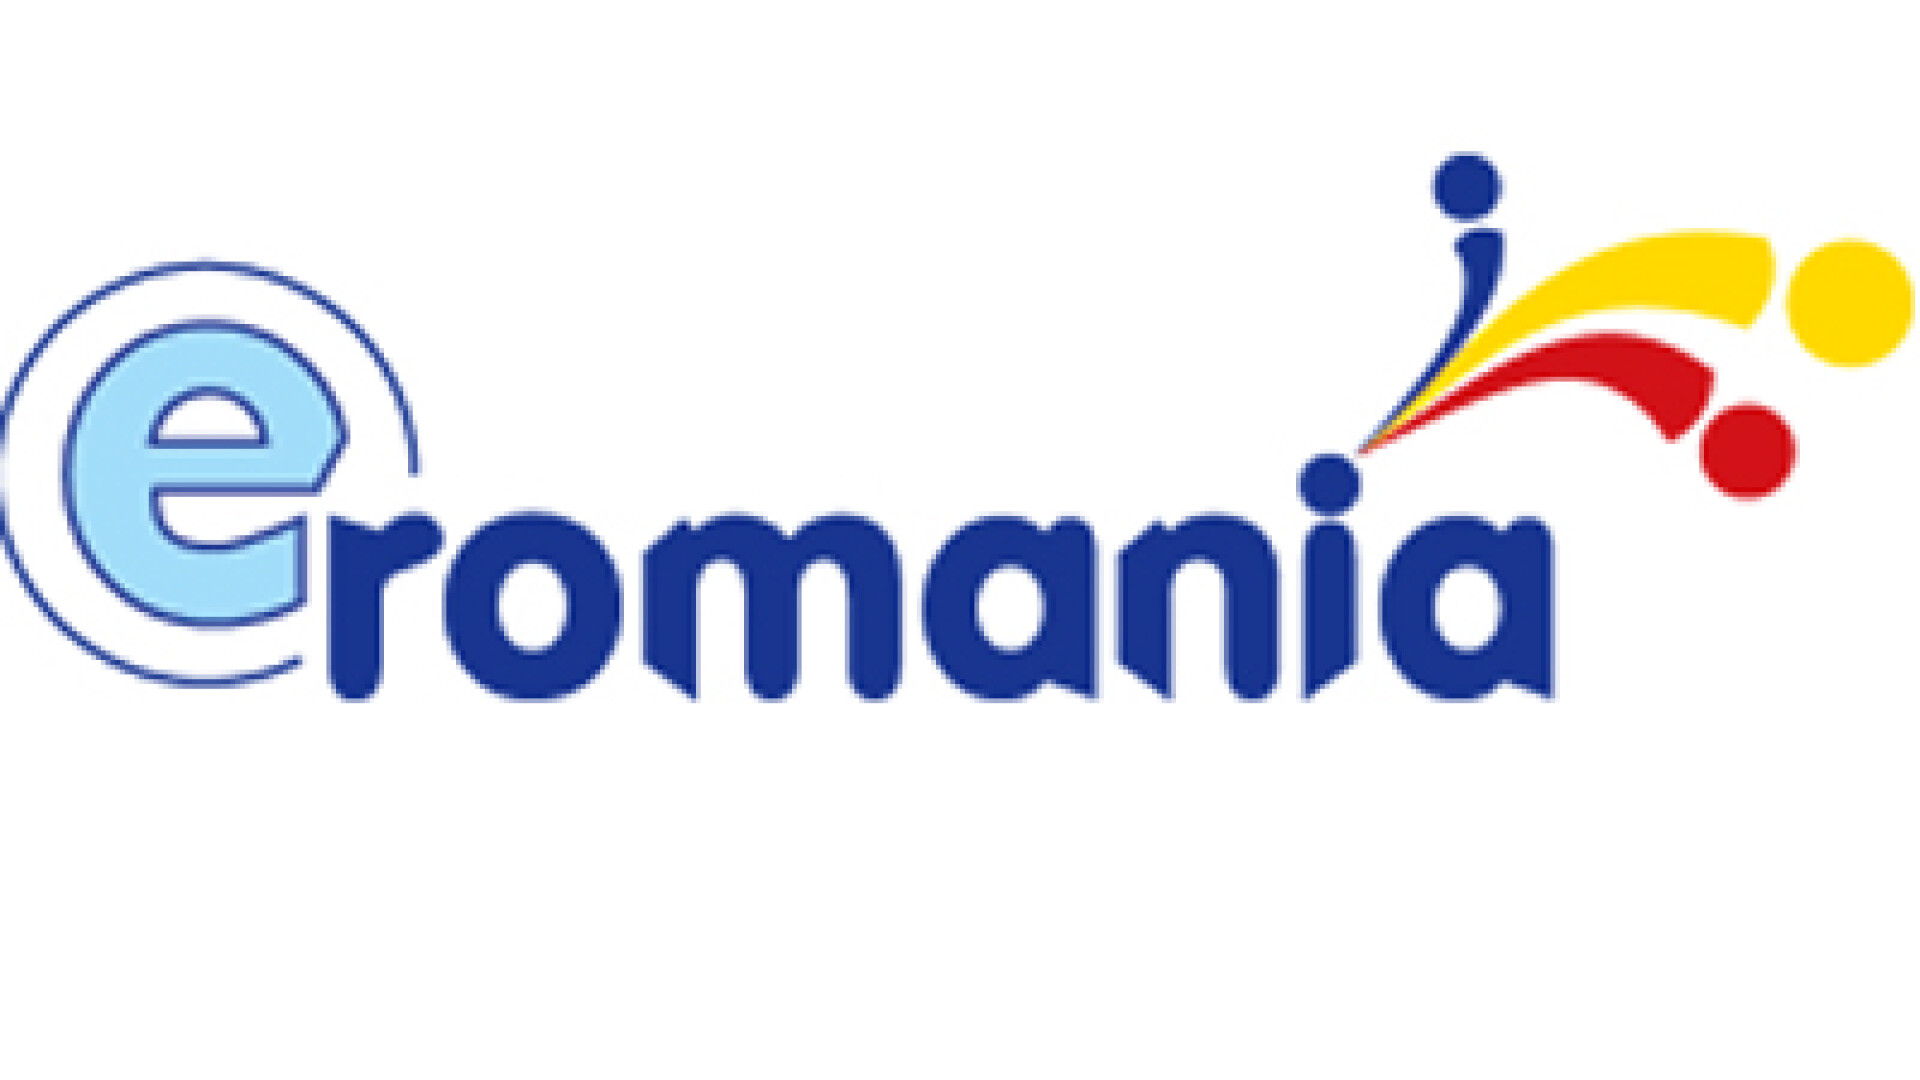 e-Romania